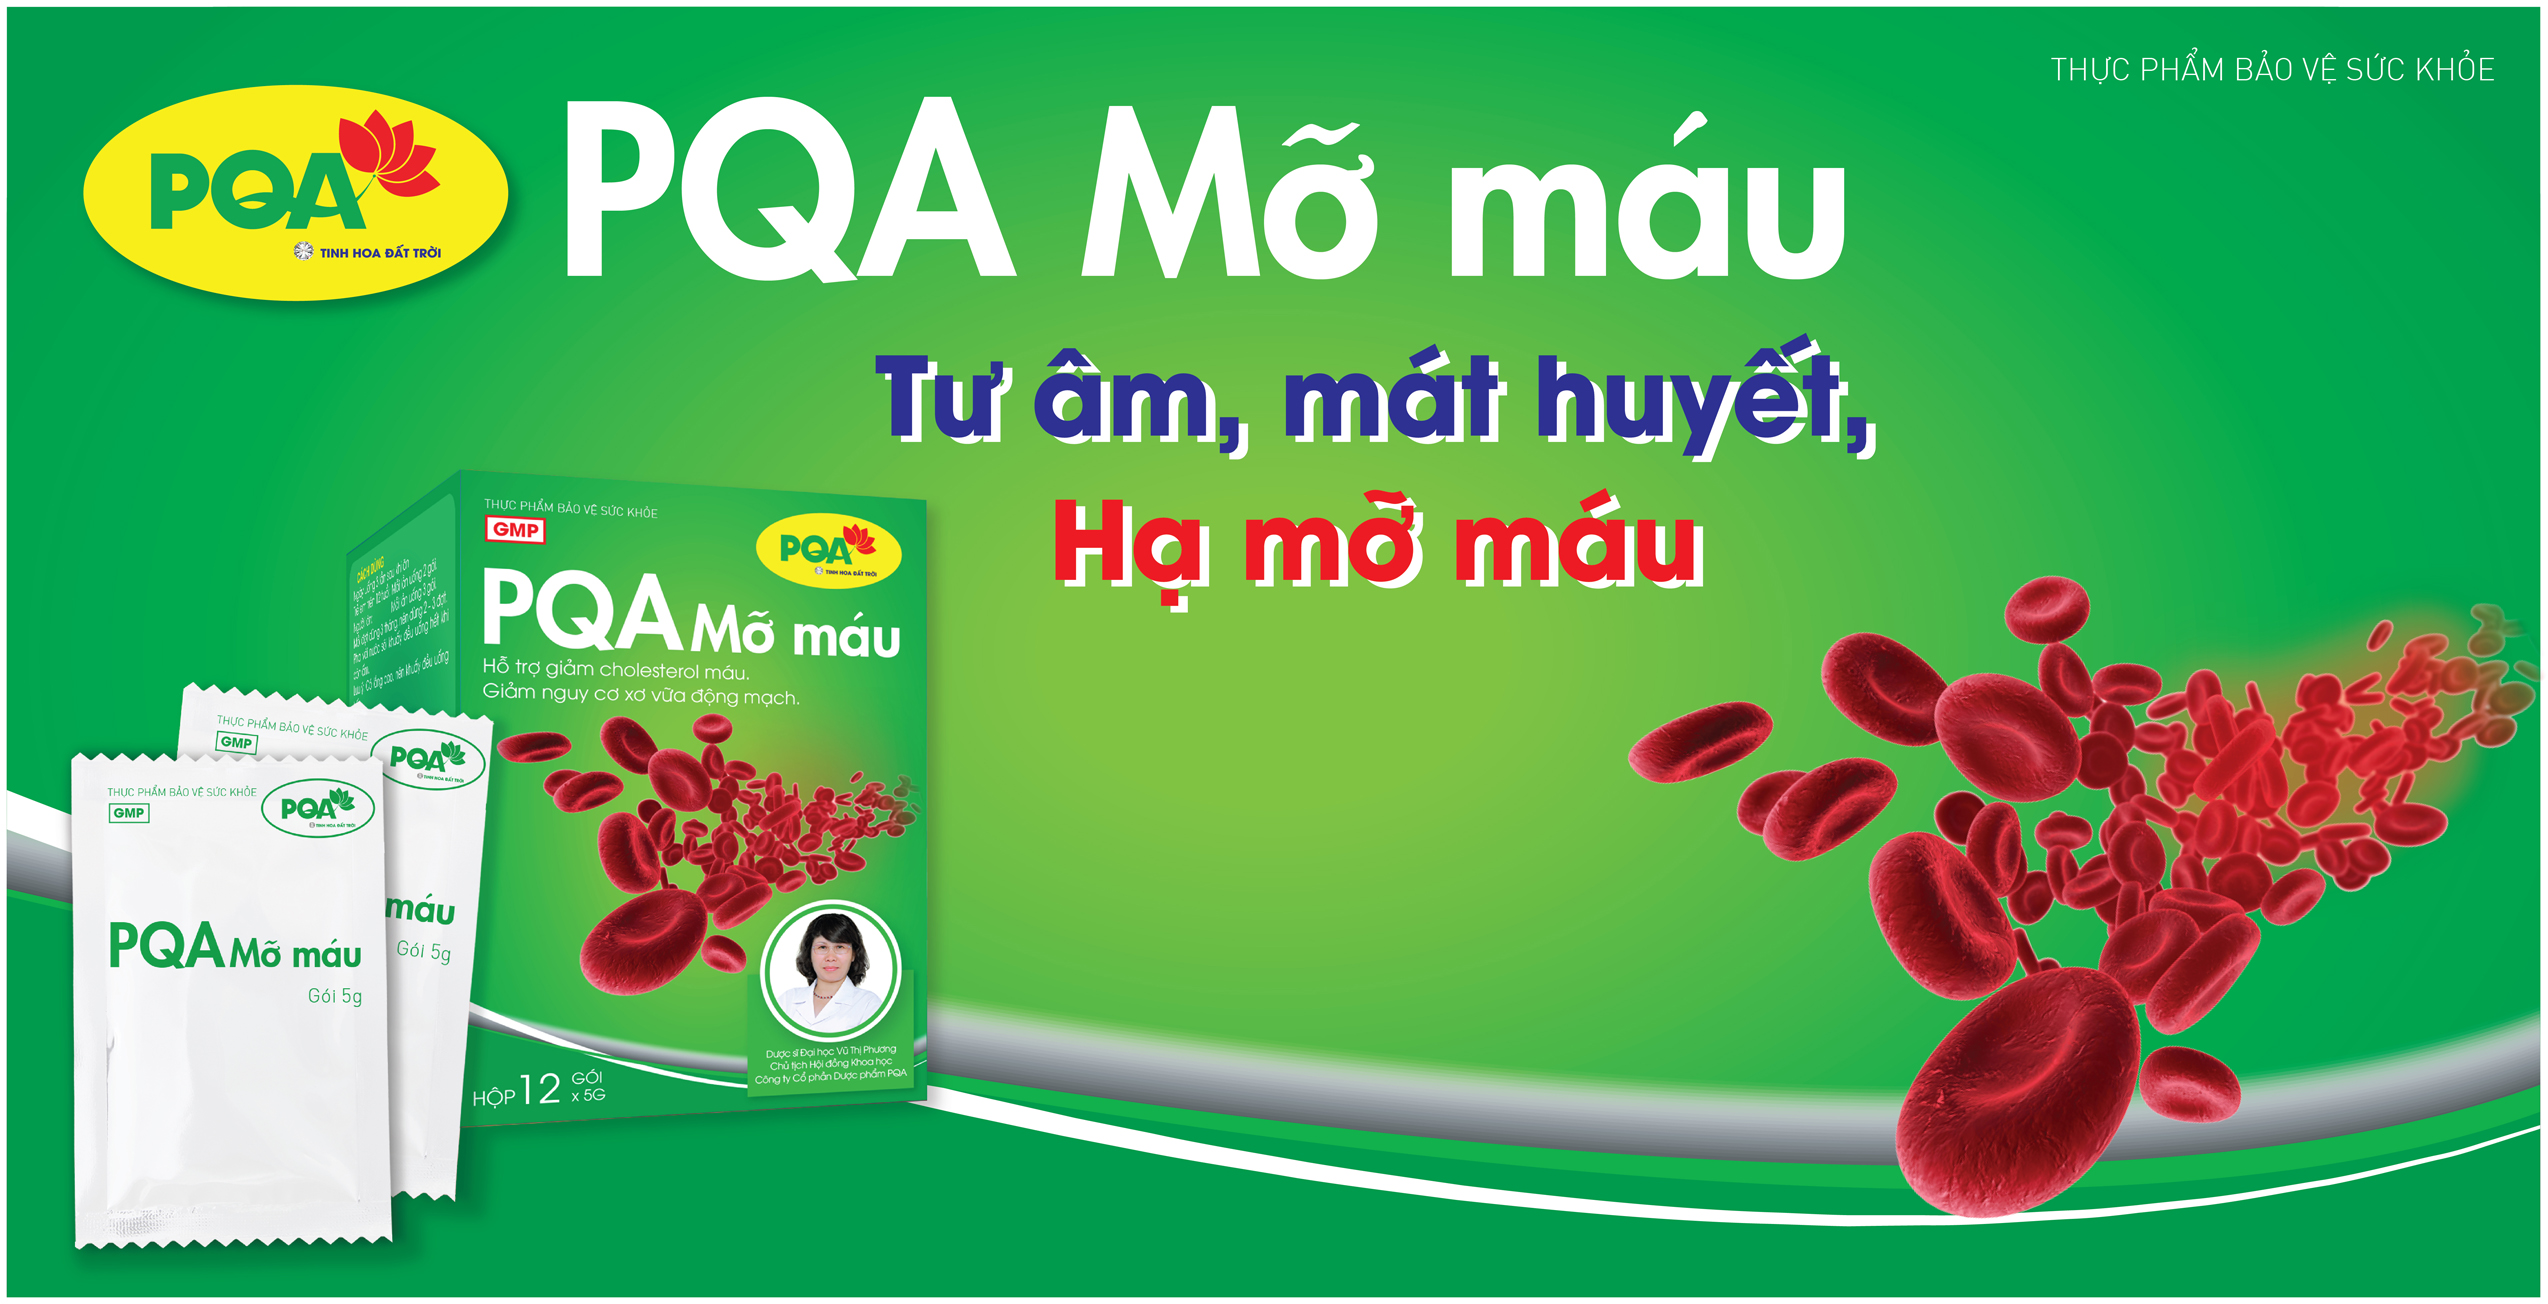 PQA Mỡ Máu là dược phẩm thảo dược có tác dụng tư âm, mát huyết, hỗ trợ ngăn ngừa mỡ máu, hạn chế  Cholesterol toàn phần, hỗ trợ ngăn ngừa xơ vữa mạch máu.